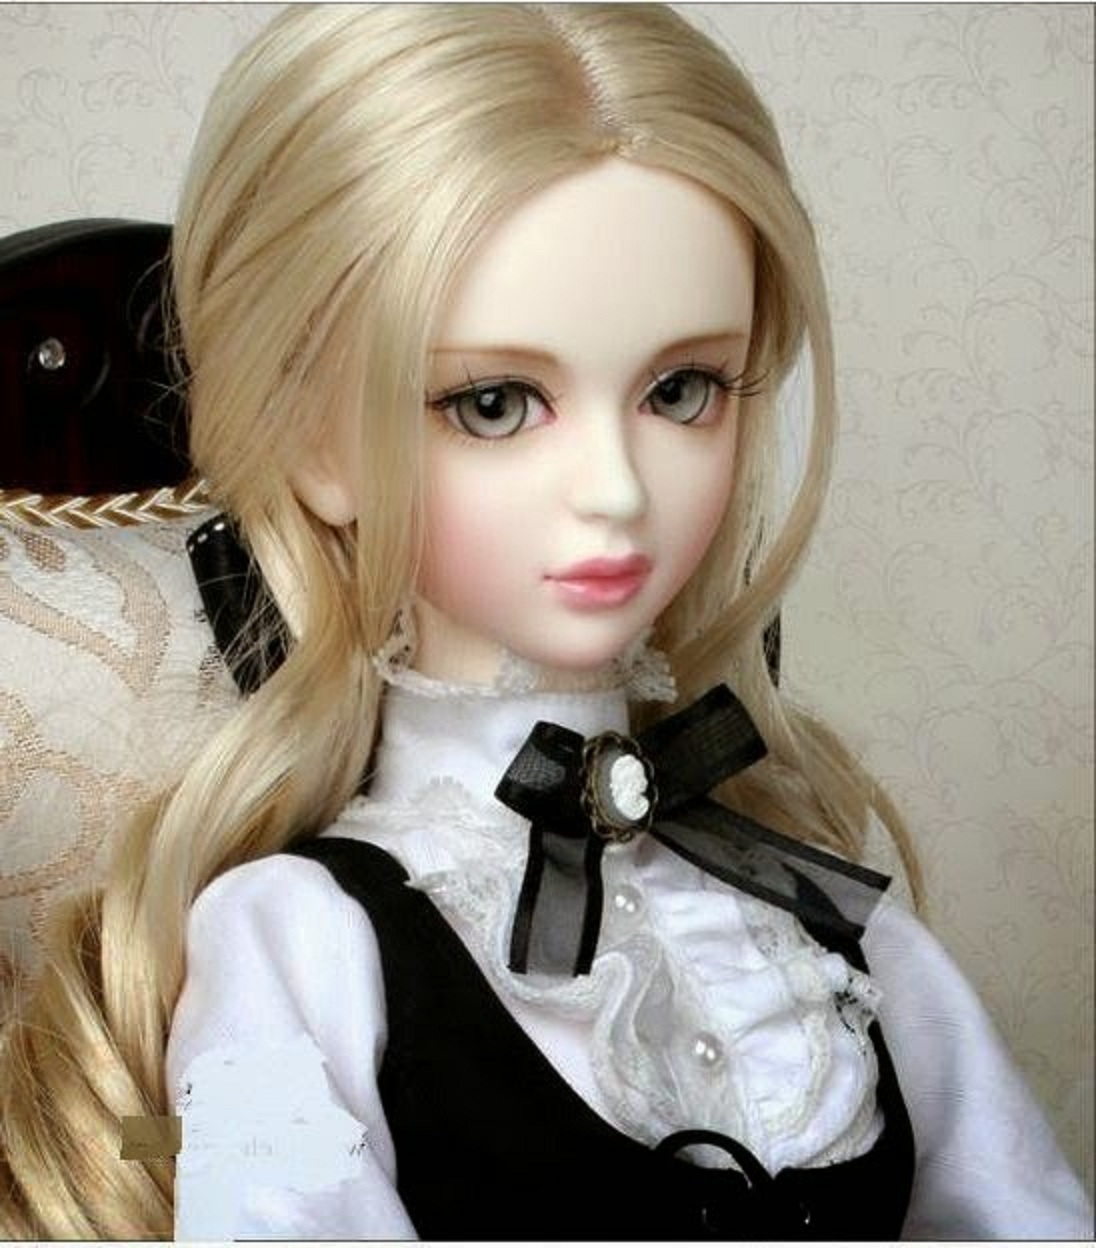  Cute  Baby  Barbie Doll  Wallpaper  Beautiful Desktop HD 